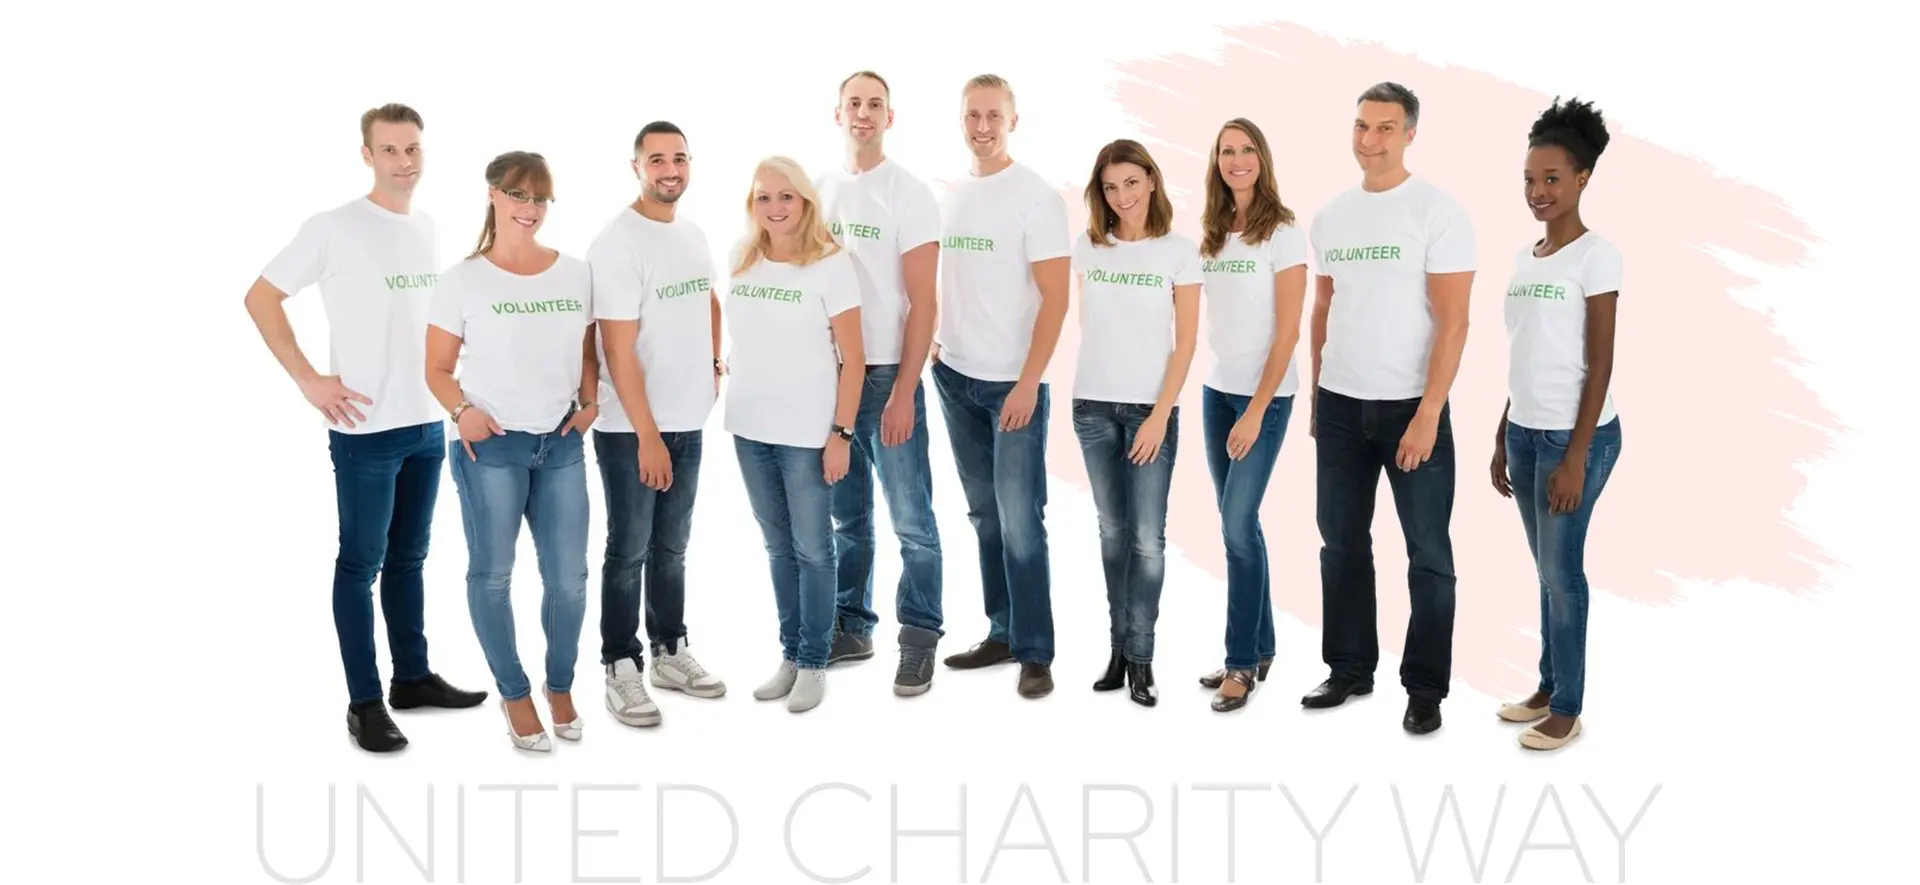 United Charity Way